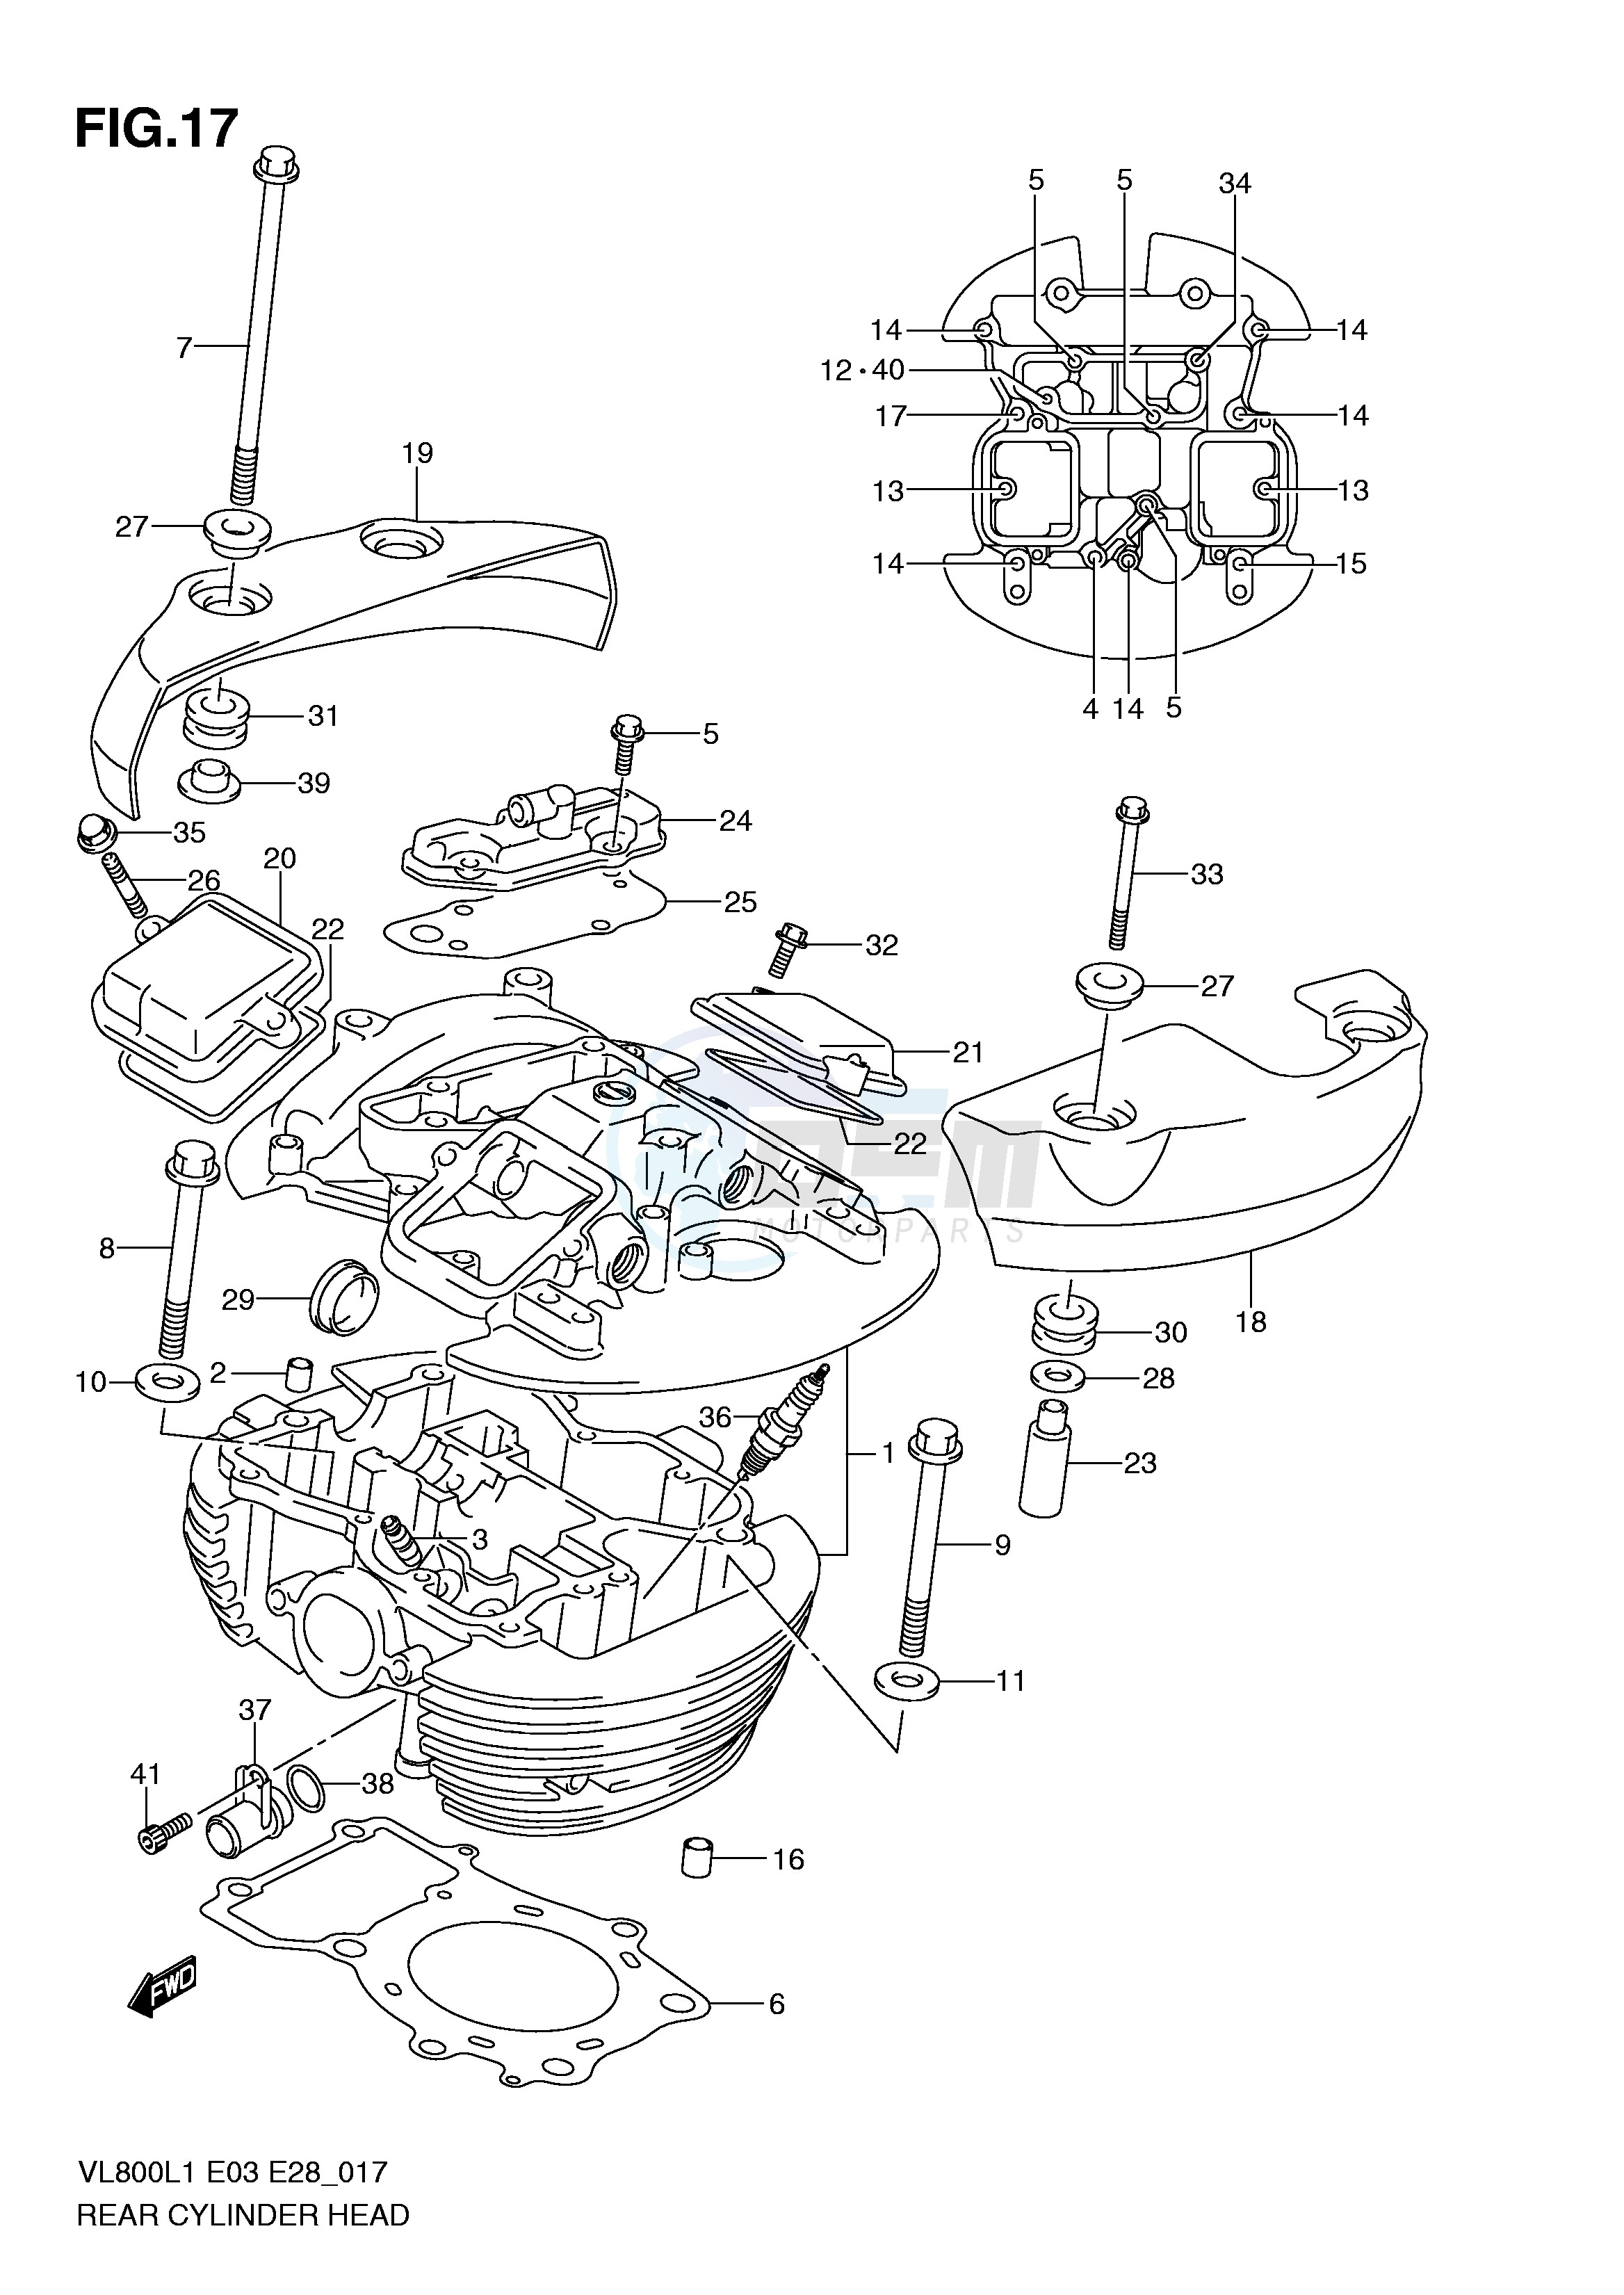 REAR CYLINDER HEAD (VL800TL1 E3) blueprint